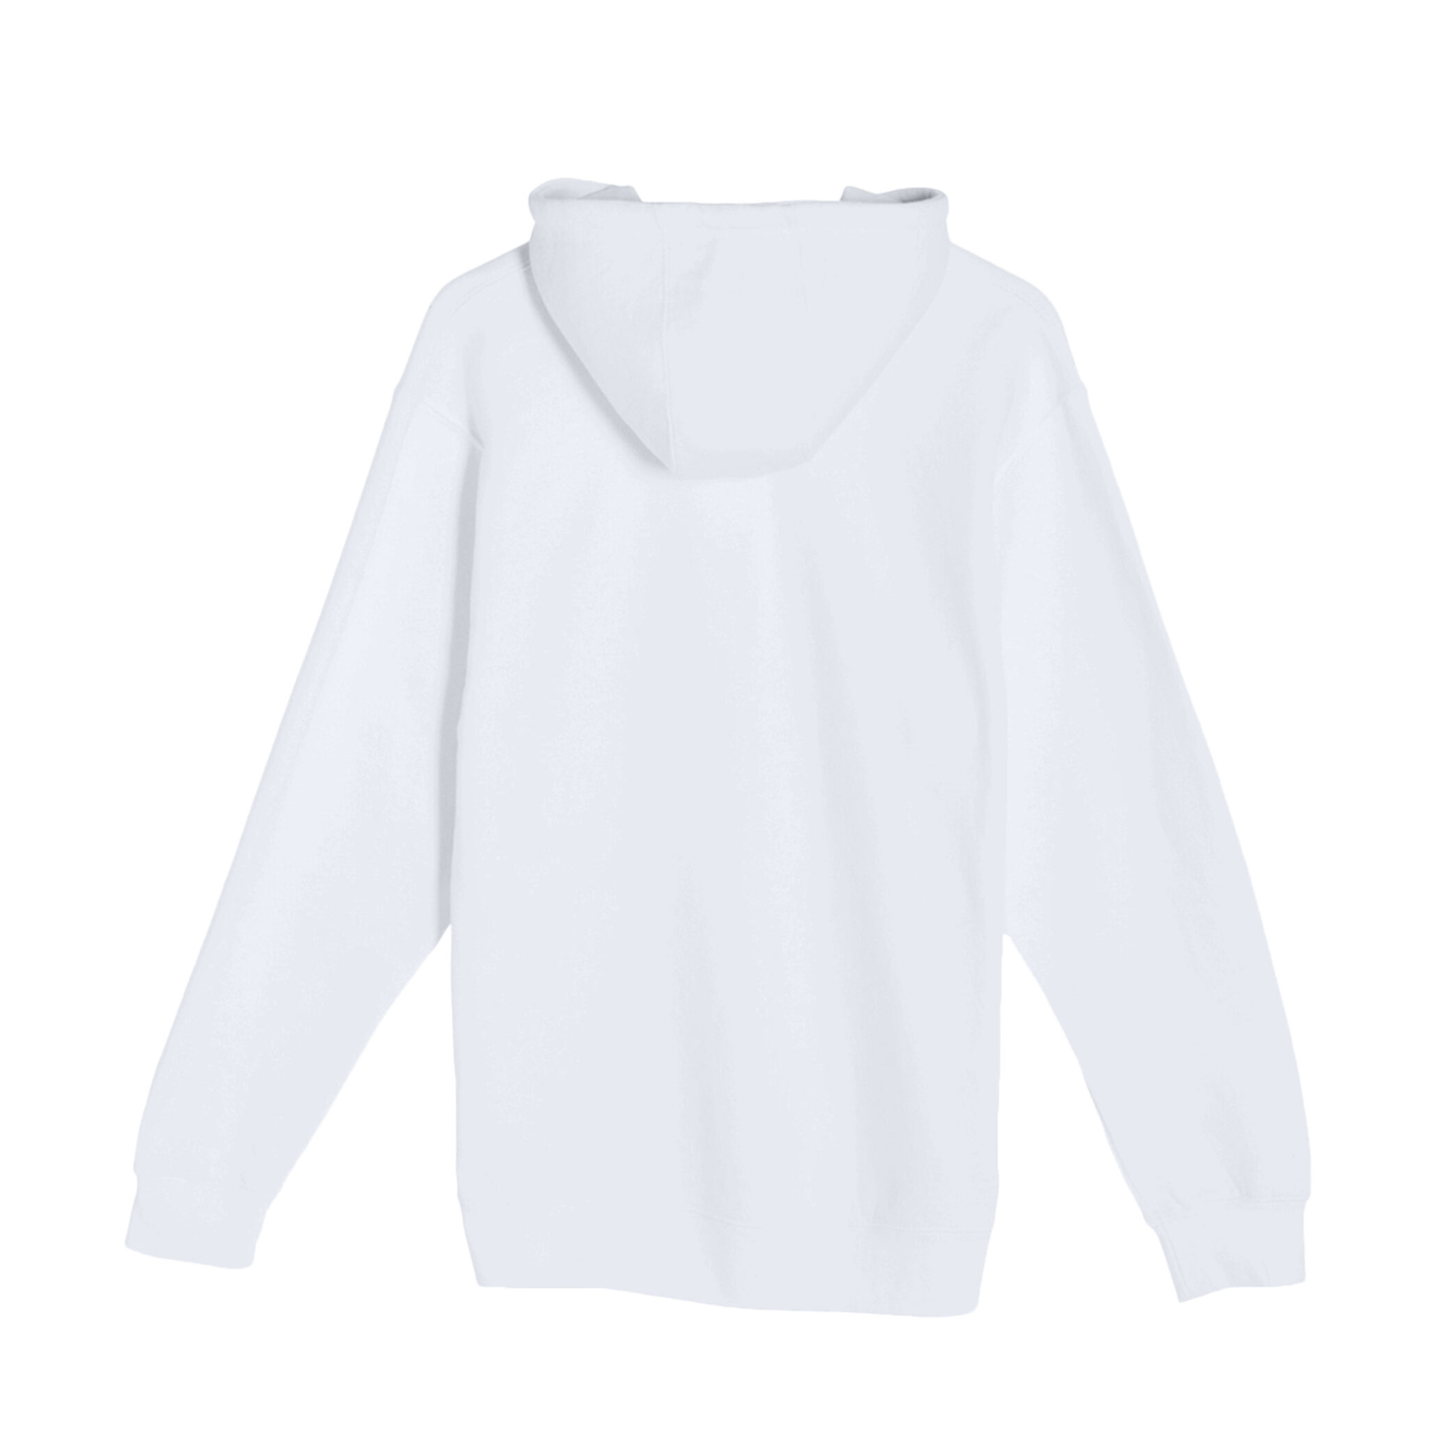 Oswego Lax - Unisex Hooded Pocket Sweatshirt White